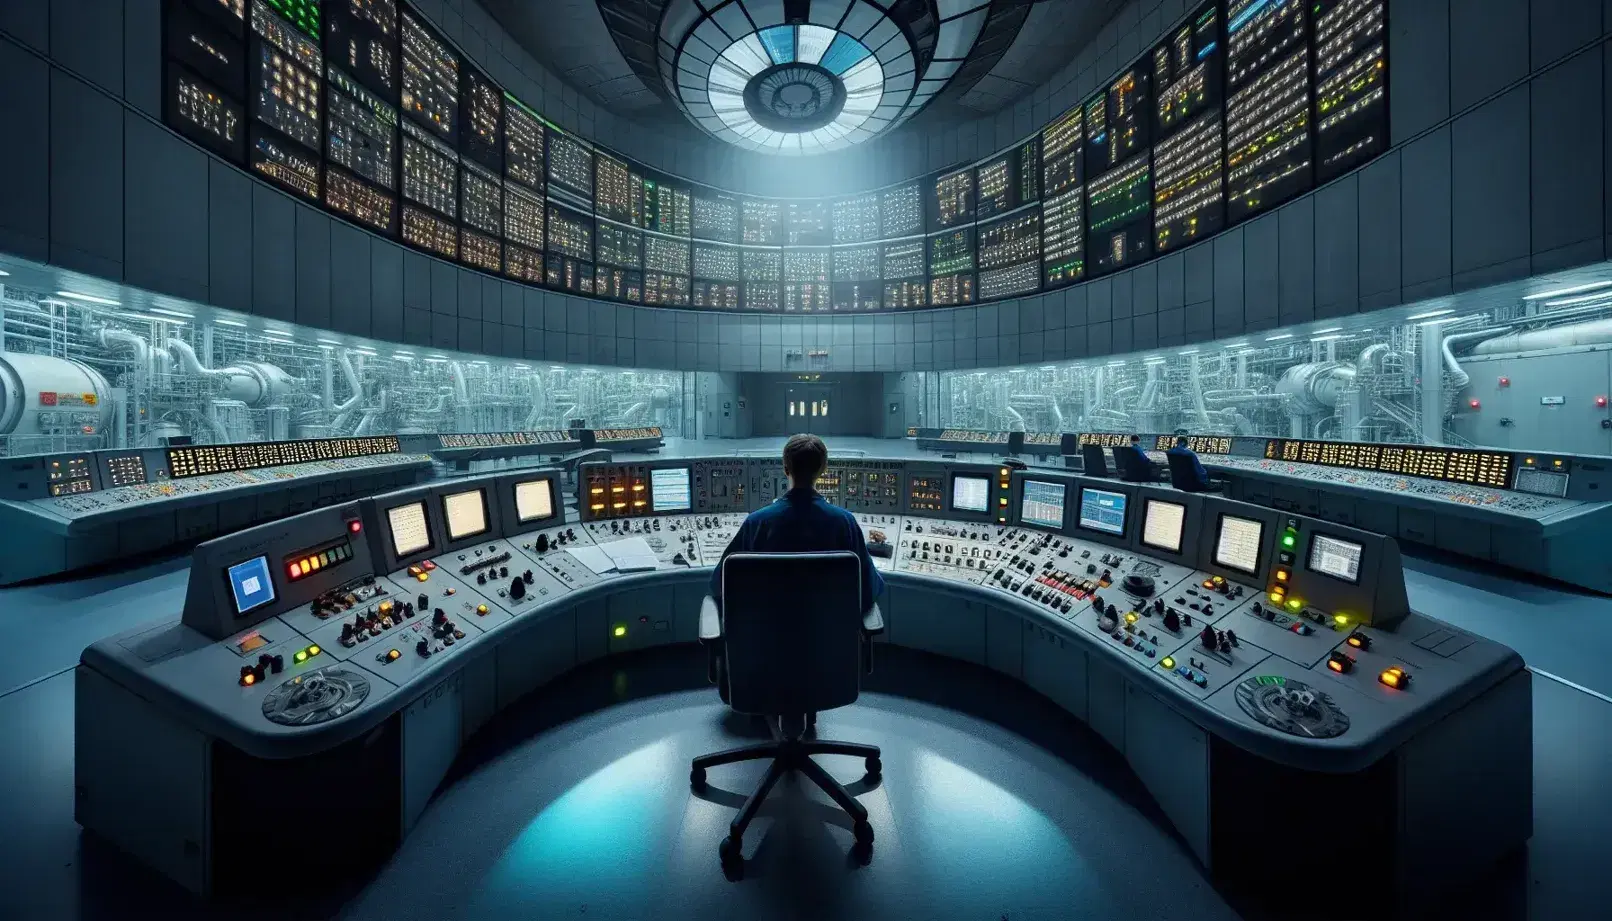 Pannello di controllo curvo con schermi luminosi e interruttori in sala comando di un reattore nucleare, operatore al lavoro.